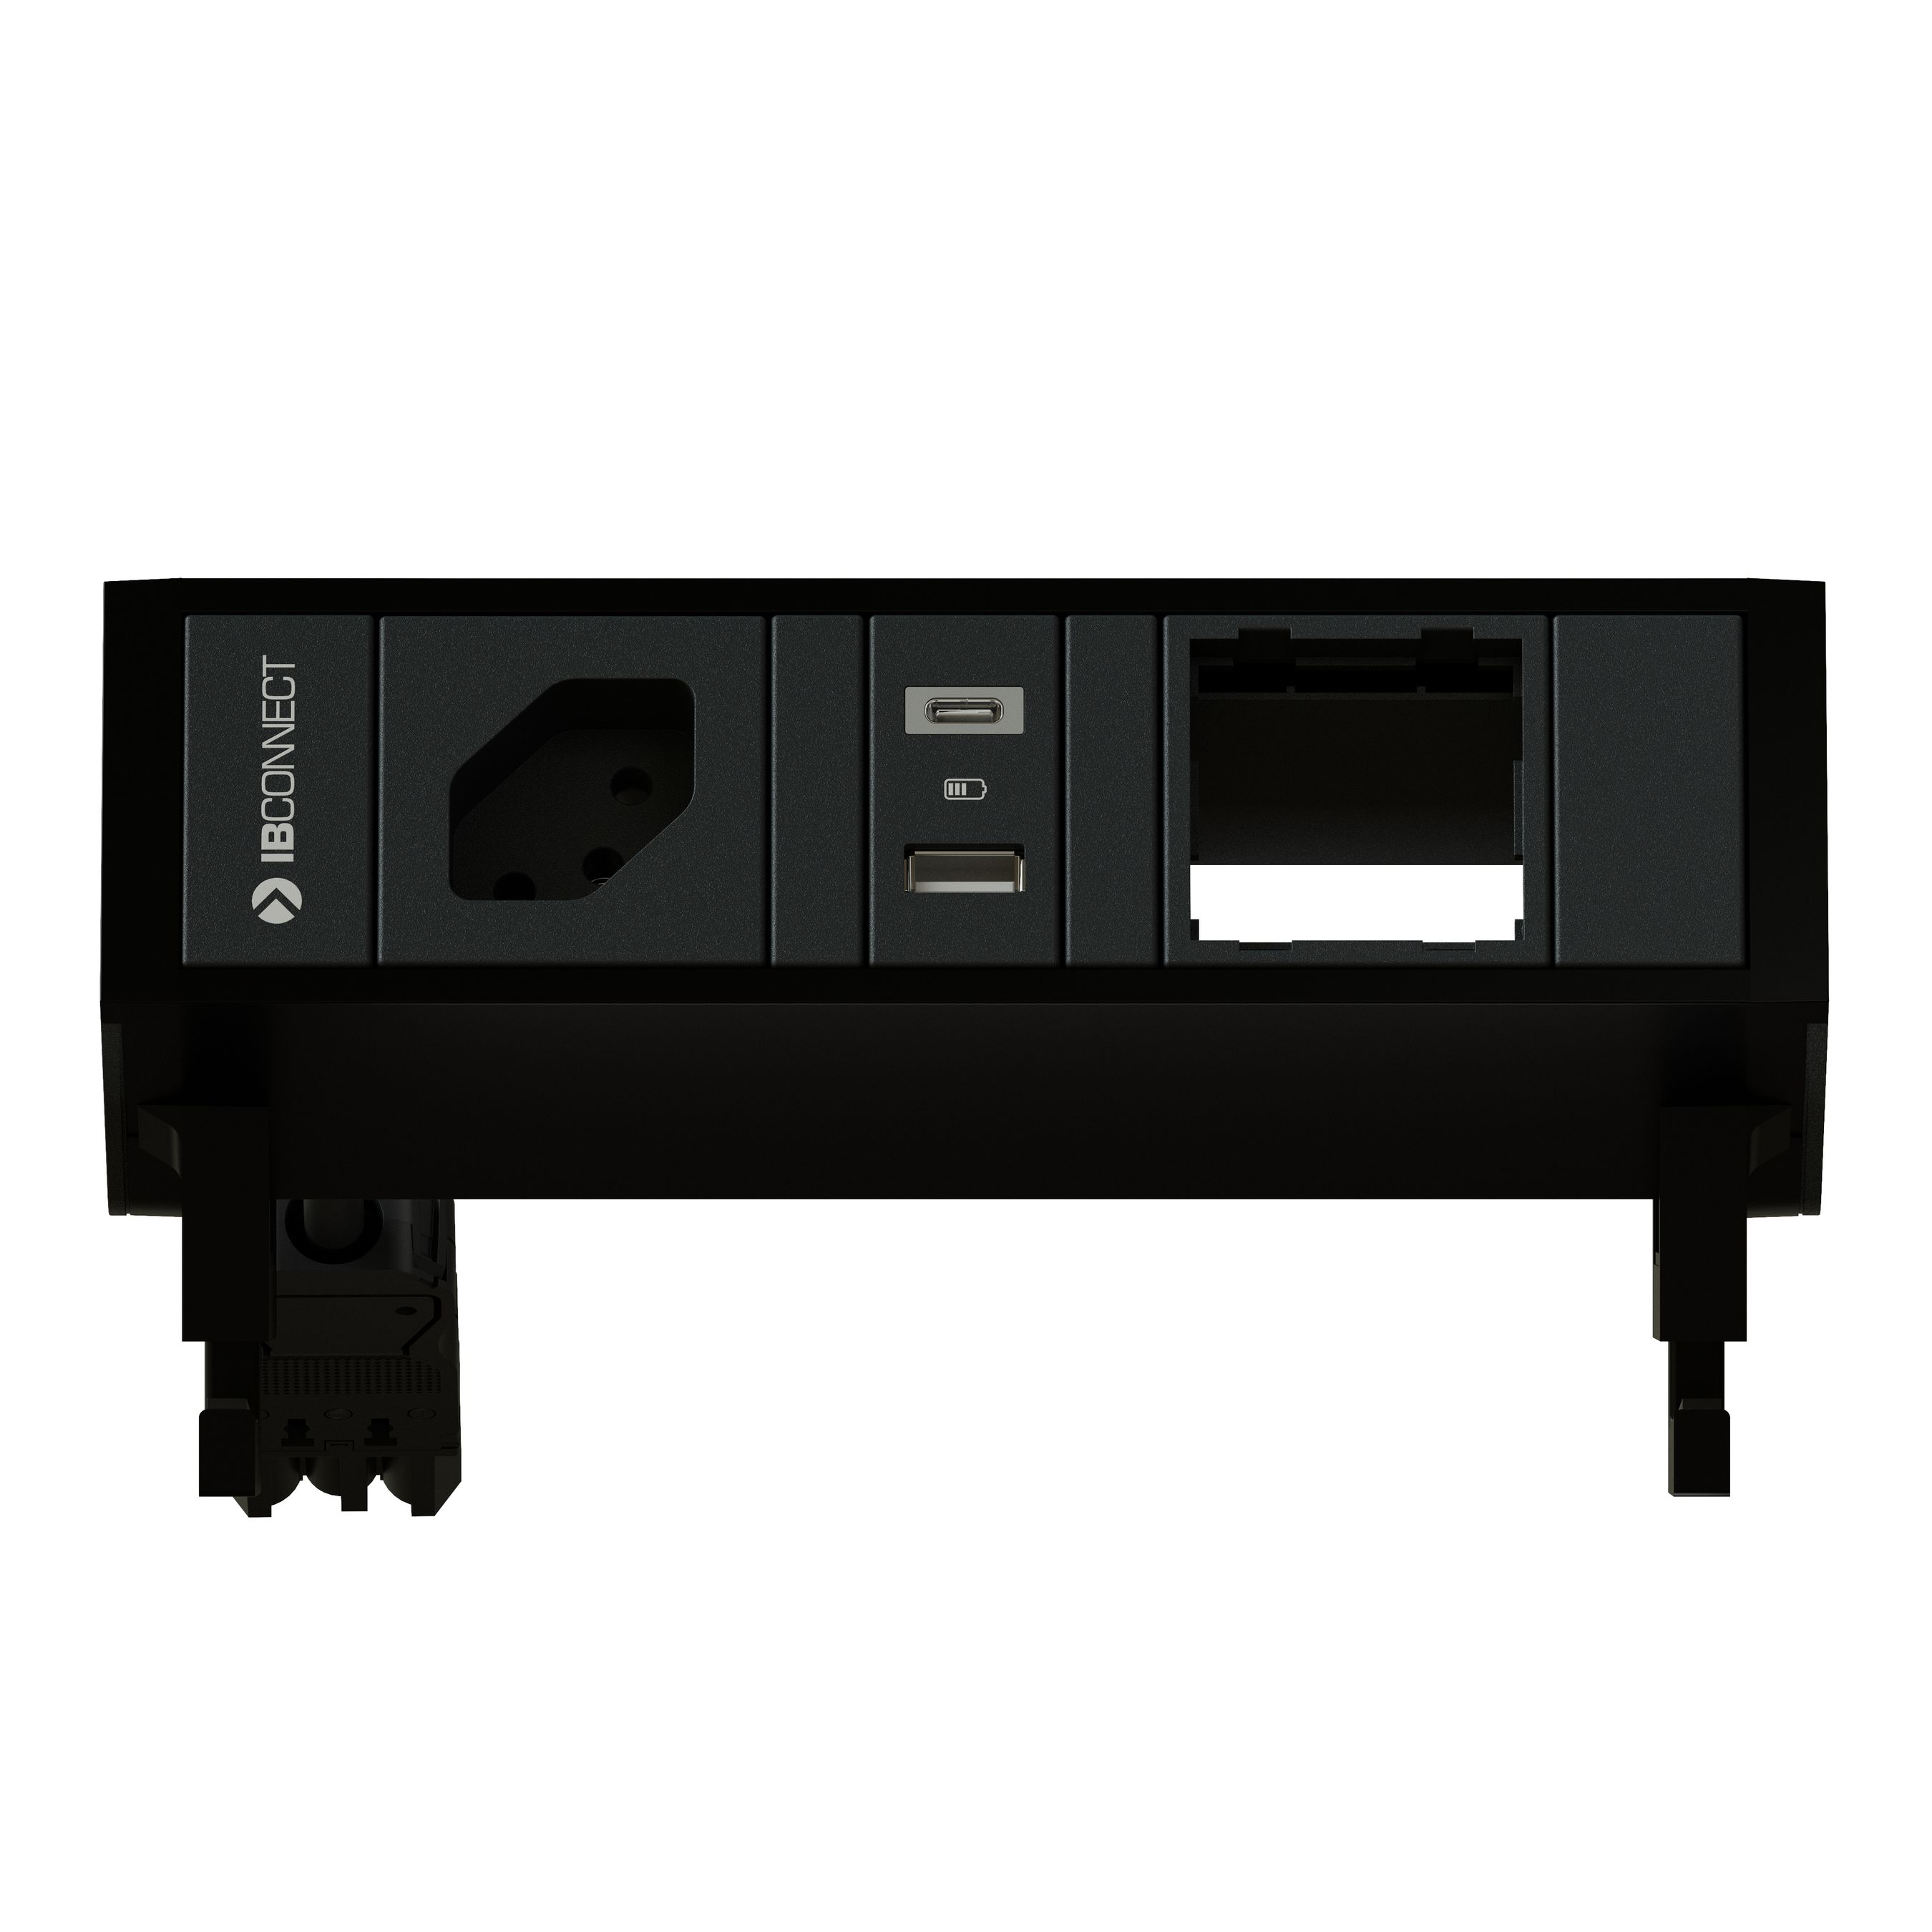 SUPRA - 1 X SOCKET + 1 X USB A/C + 1 X EMPTY MODULE